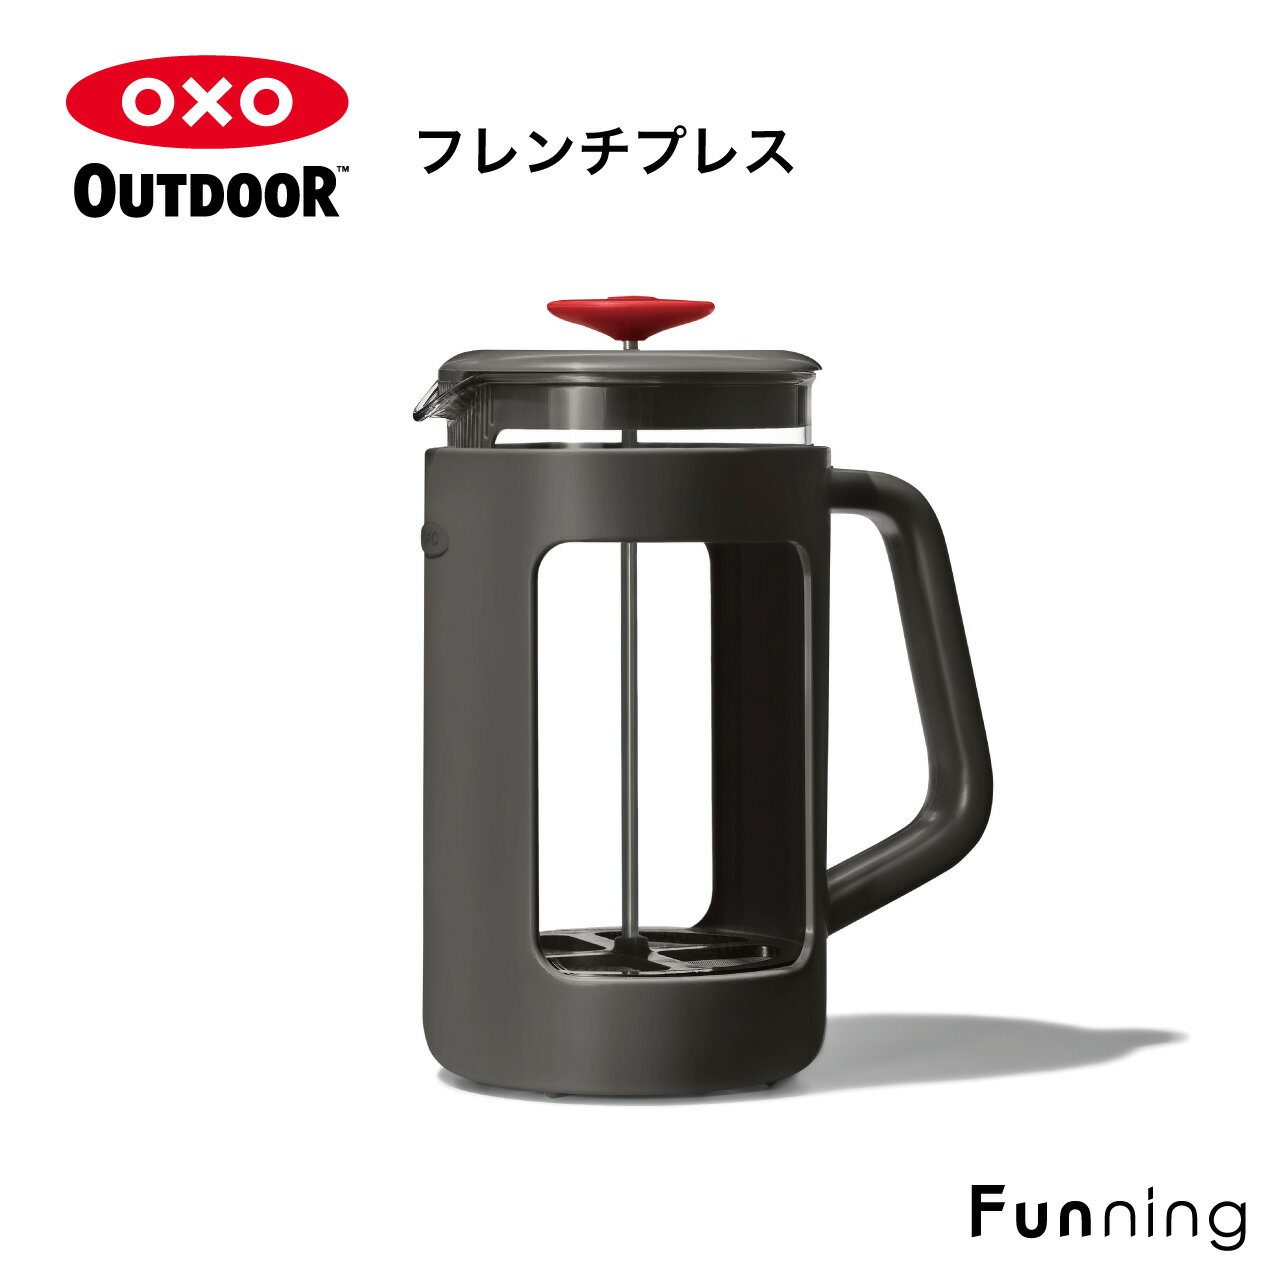 OXO Outdoor（オクソーアウトドア）フレンチプレス 950ml コーヒープレス アウトドア キャンプ お家 軽量 丈夫 持ちやすい お手入れ簡単 プレゼント